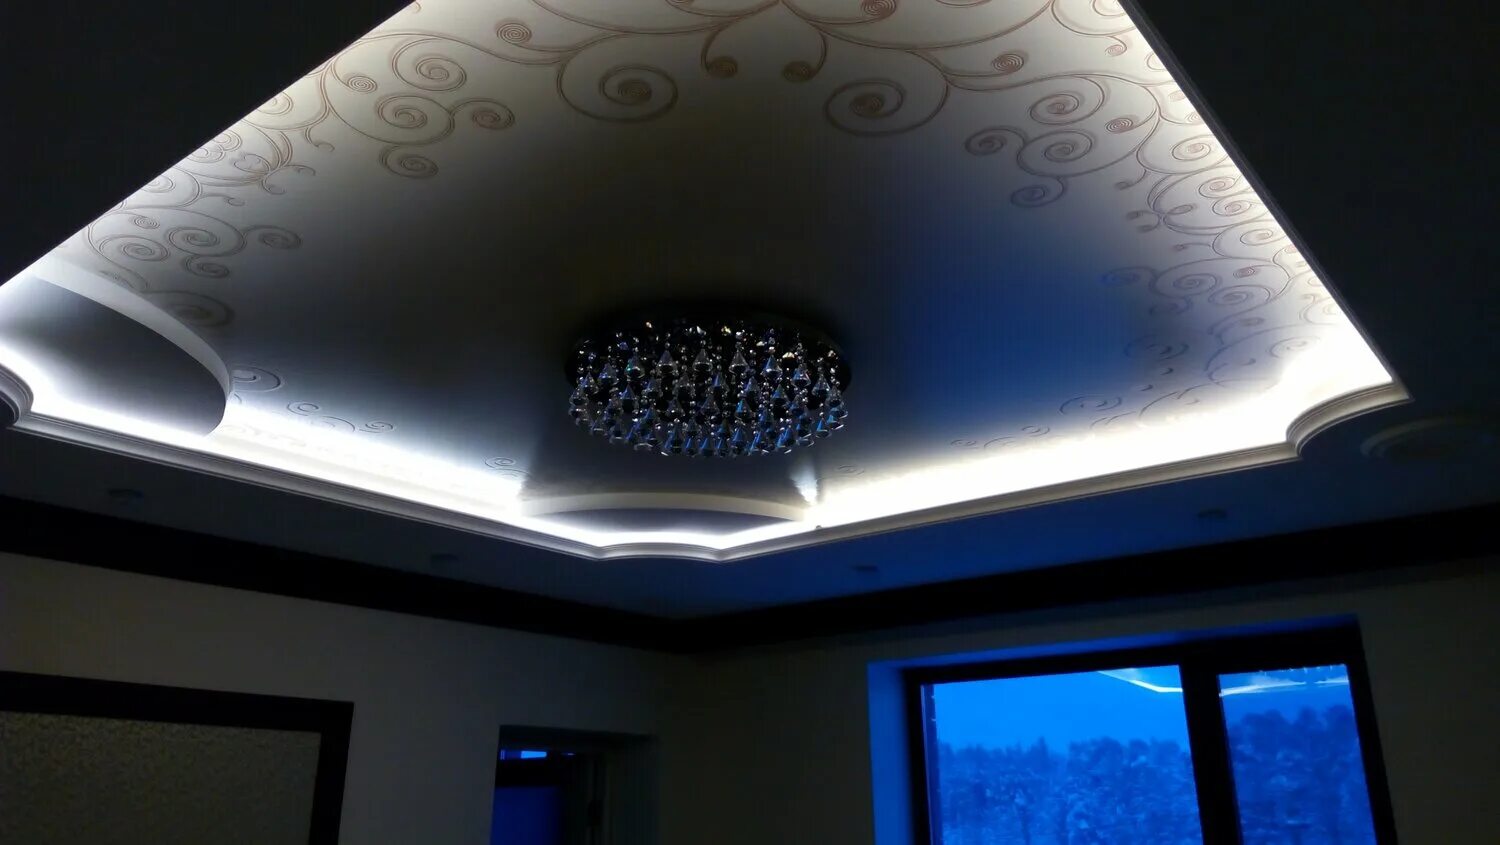 Натяжной потолок светодиоды. Потолок с подсветкой. Двухуровневый потолок с подсветкой. Светодиодная подсветка потолка. Натяжной потолок со светодиодной подсветкой.